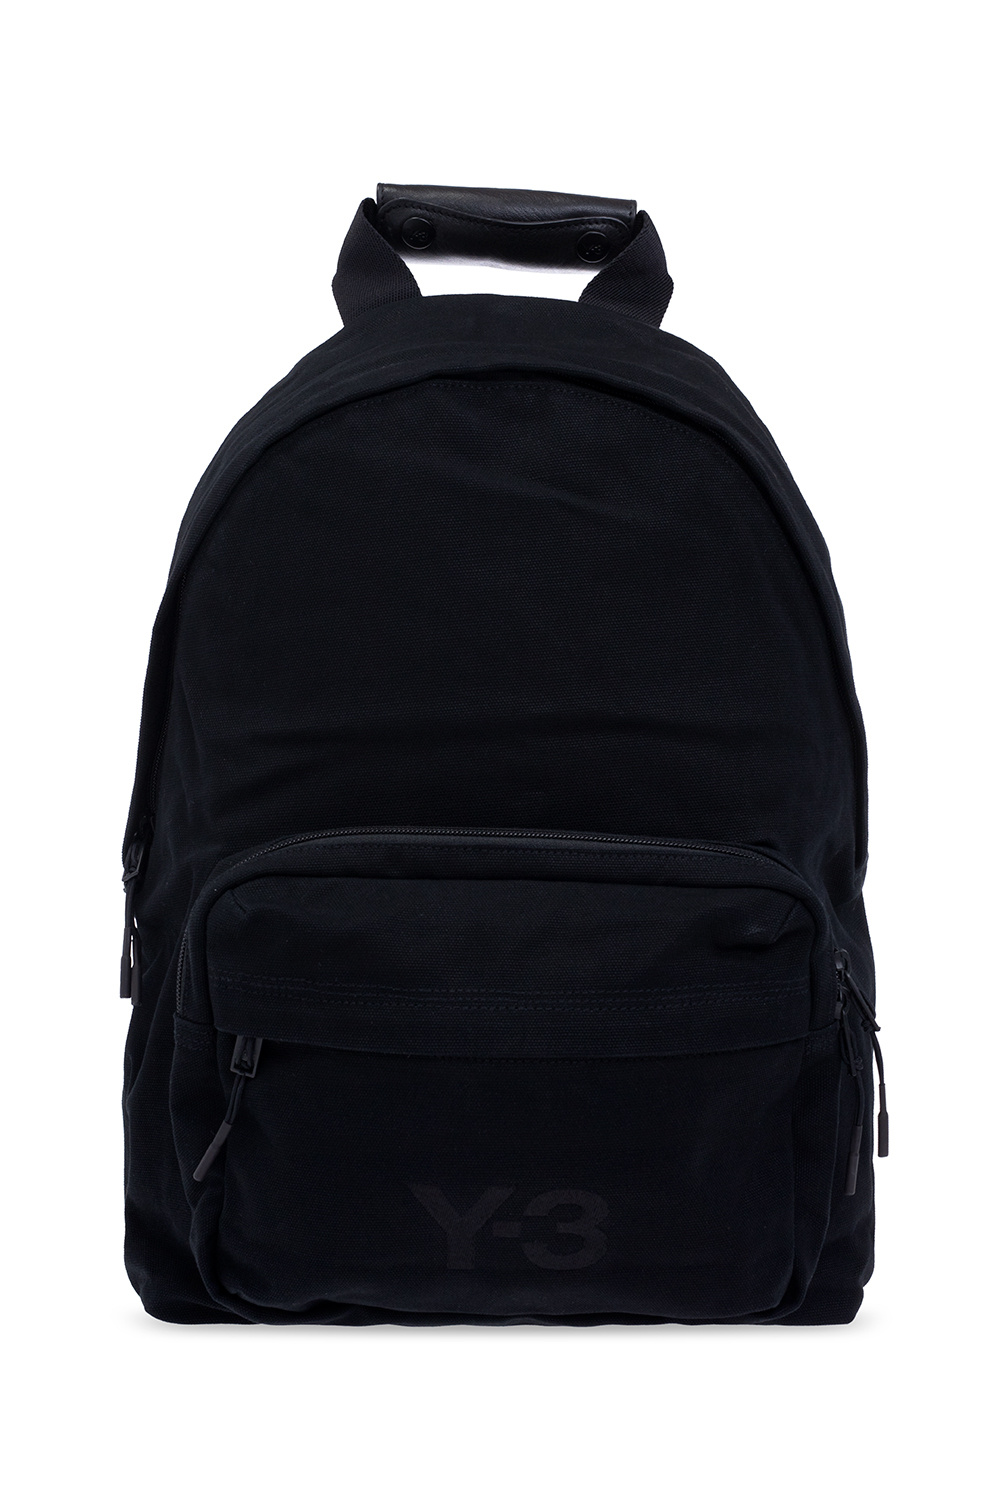 Y-3 Yohji Yamamoto Mode Travia Medium shoulder bag